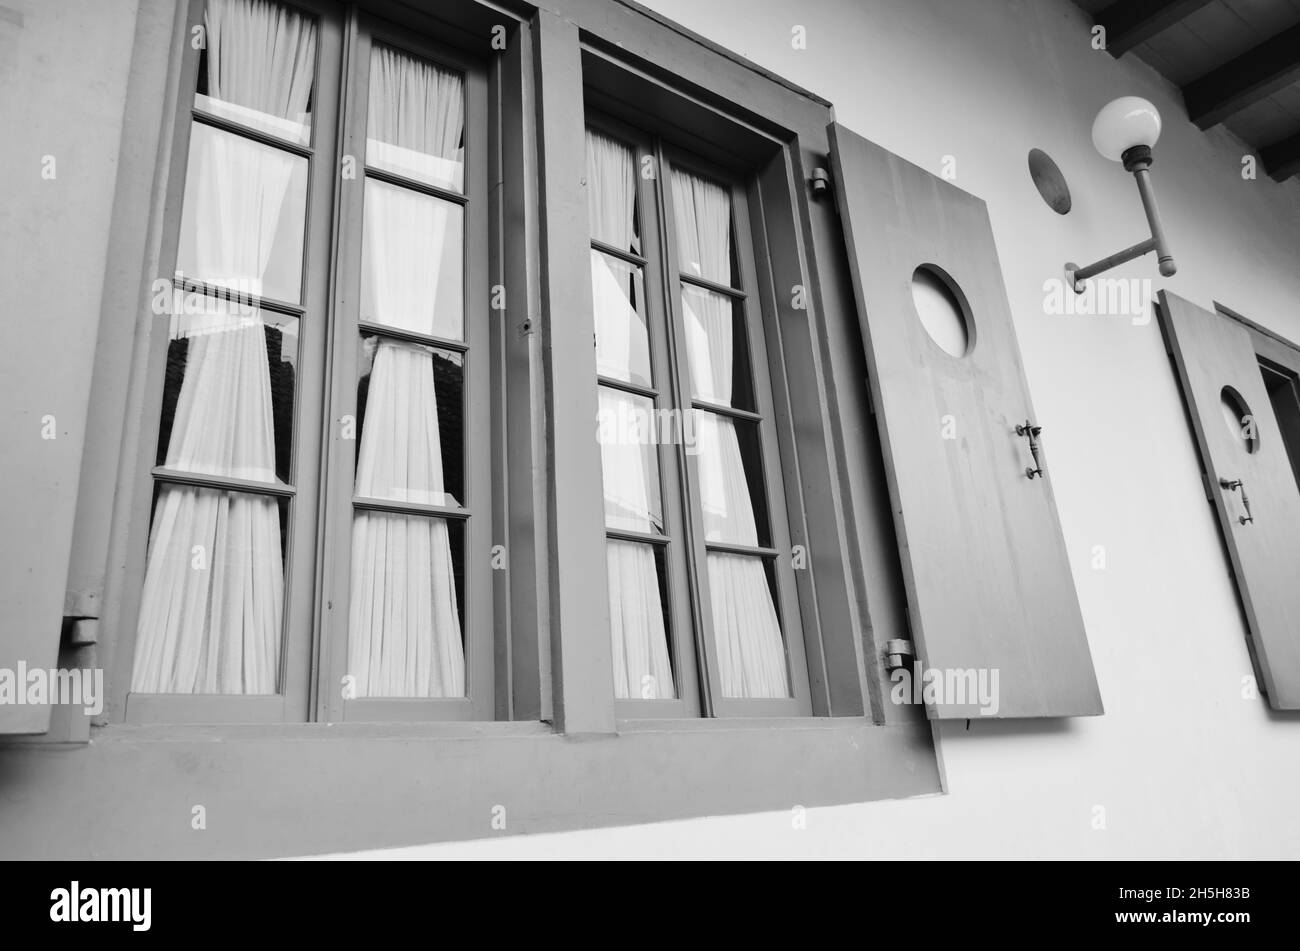 Fenster mit klassischem Modell in Schwarz-Weiß-Foto Stockfoto